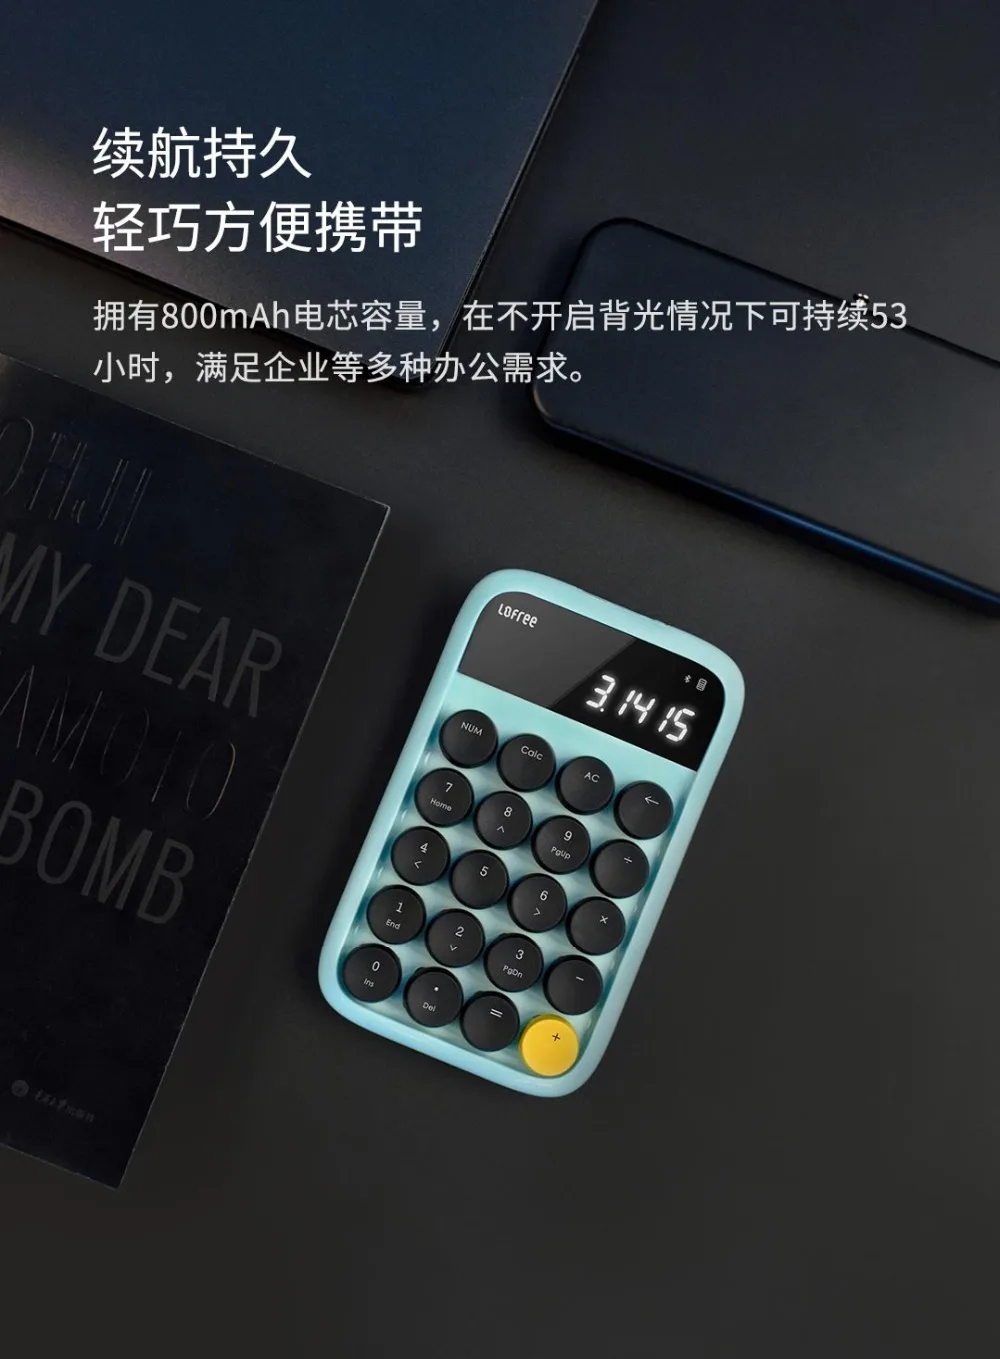 Xiaomi Lofree Bluetooth цифровая клавиатура многосистемная совместимая клавиатура с подсветкой Micro USB 800 мАч емкость умный калькулятор